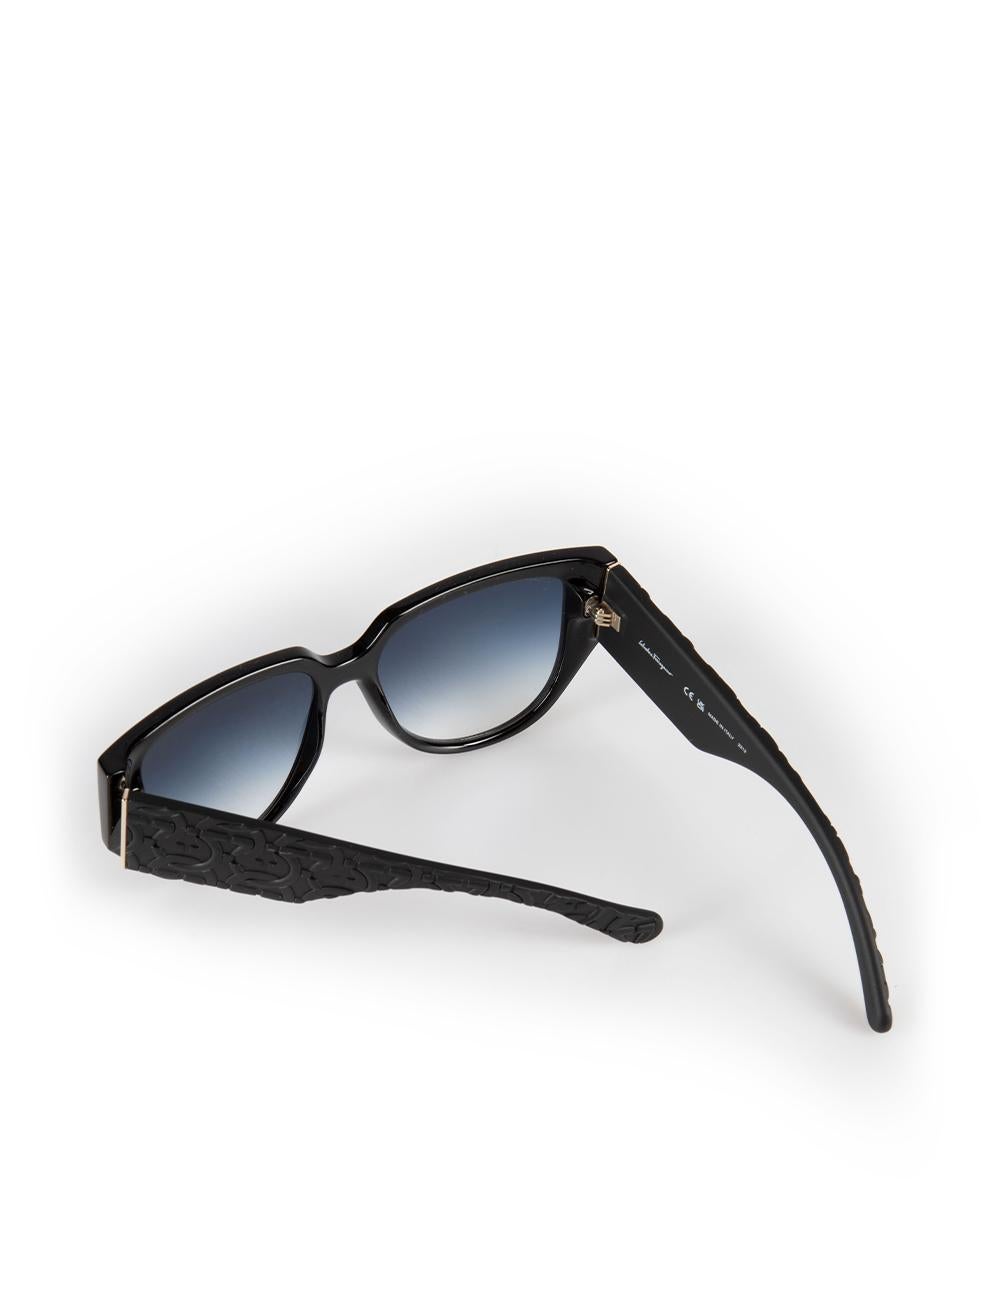 Salvatore Ferragamo Black Browline Sunglasses For Sale 2